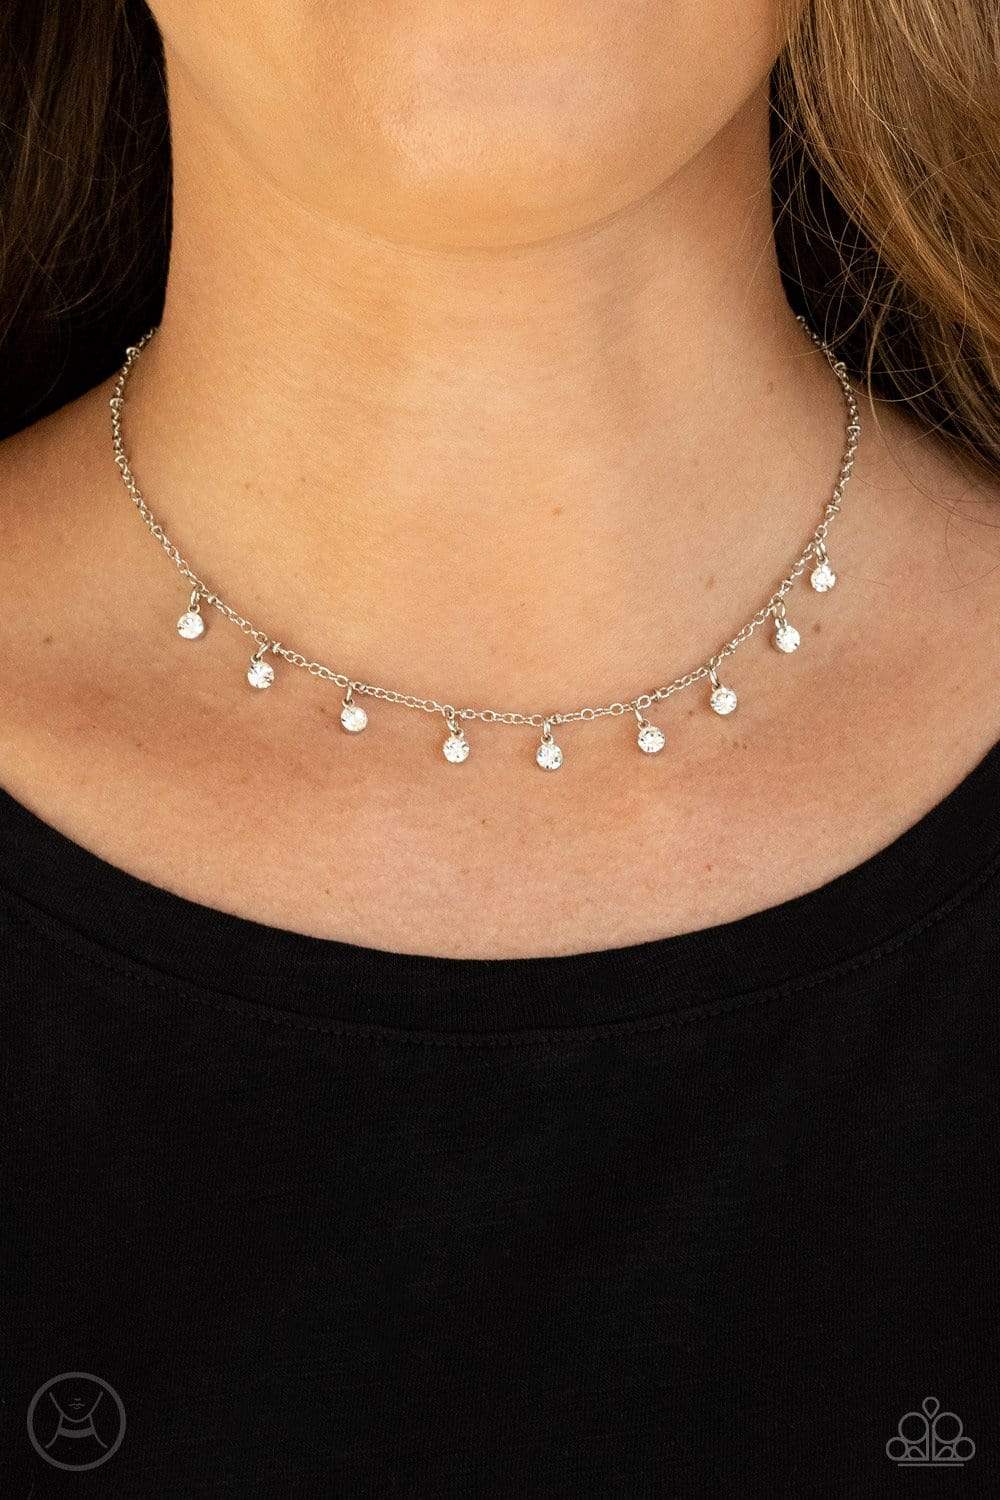 Silver Rhinestone Necklace - Choker Necklace - Rhinestone Choker